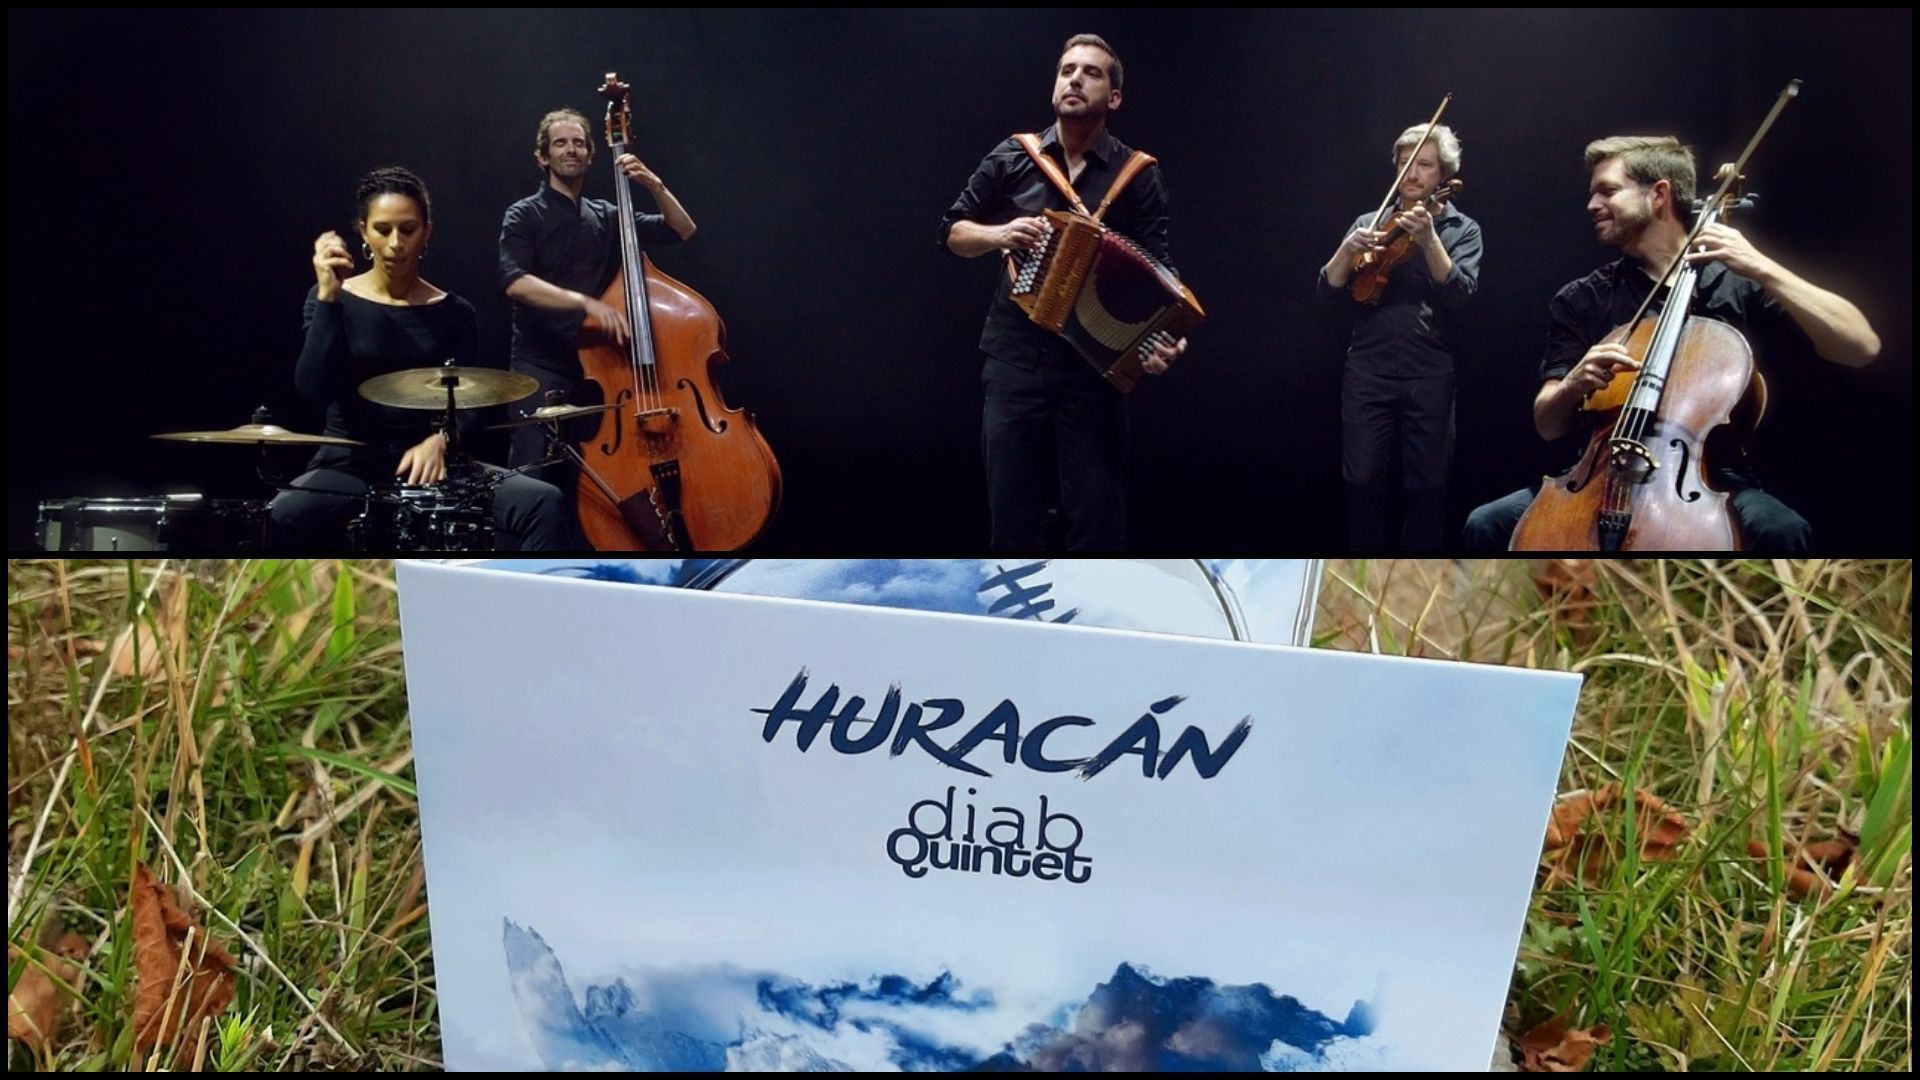 Diab Quintet - Huracán